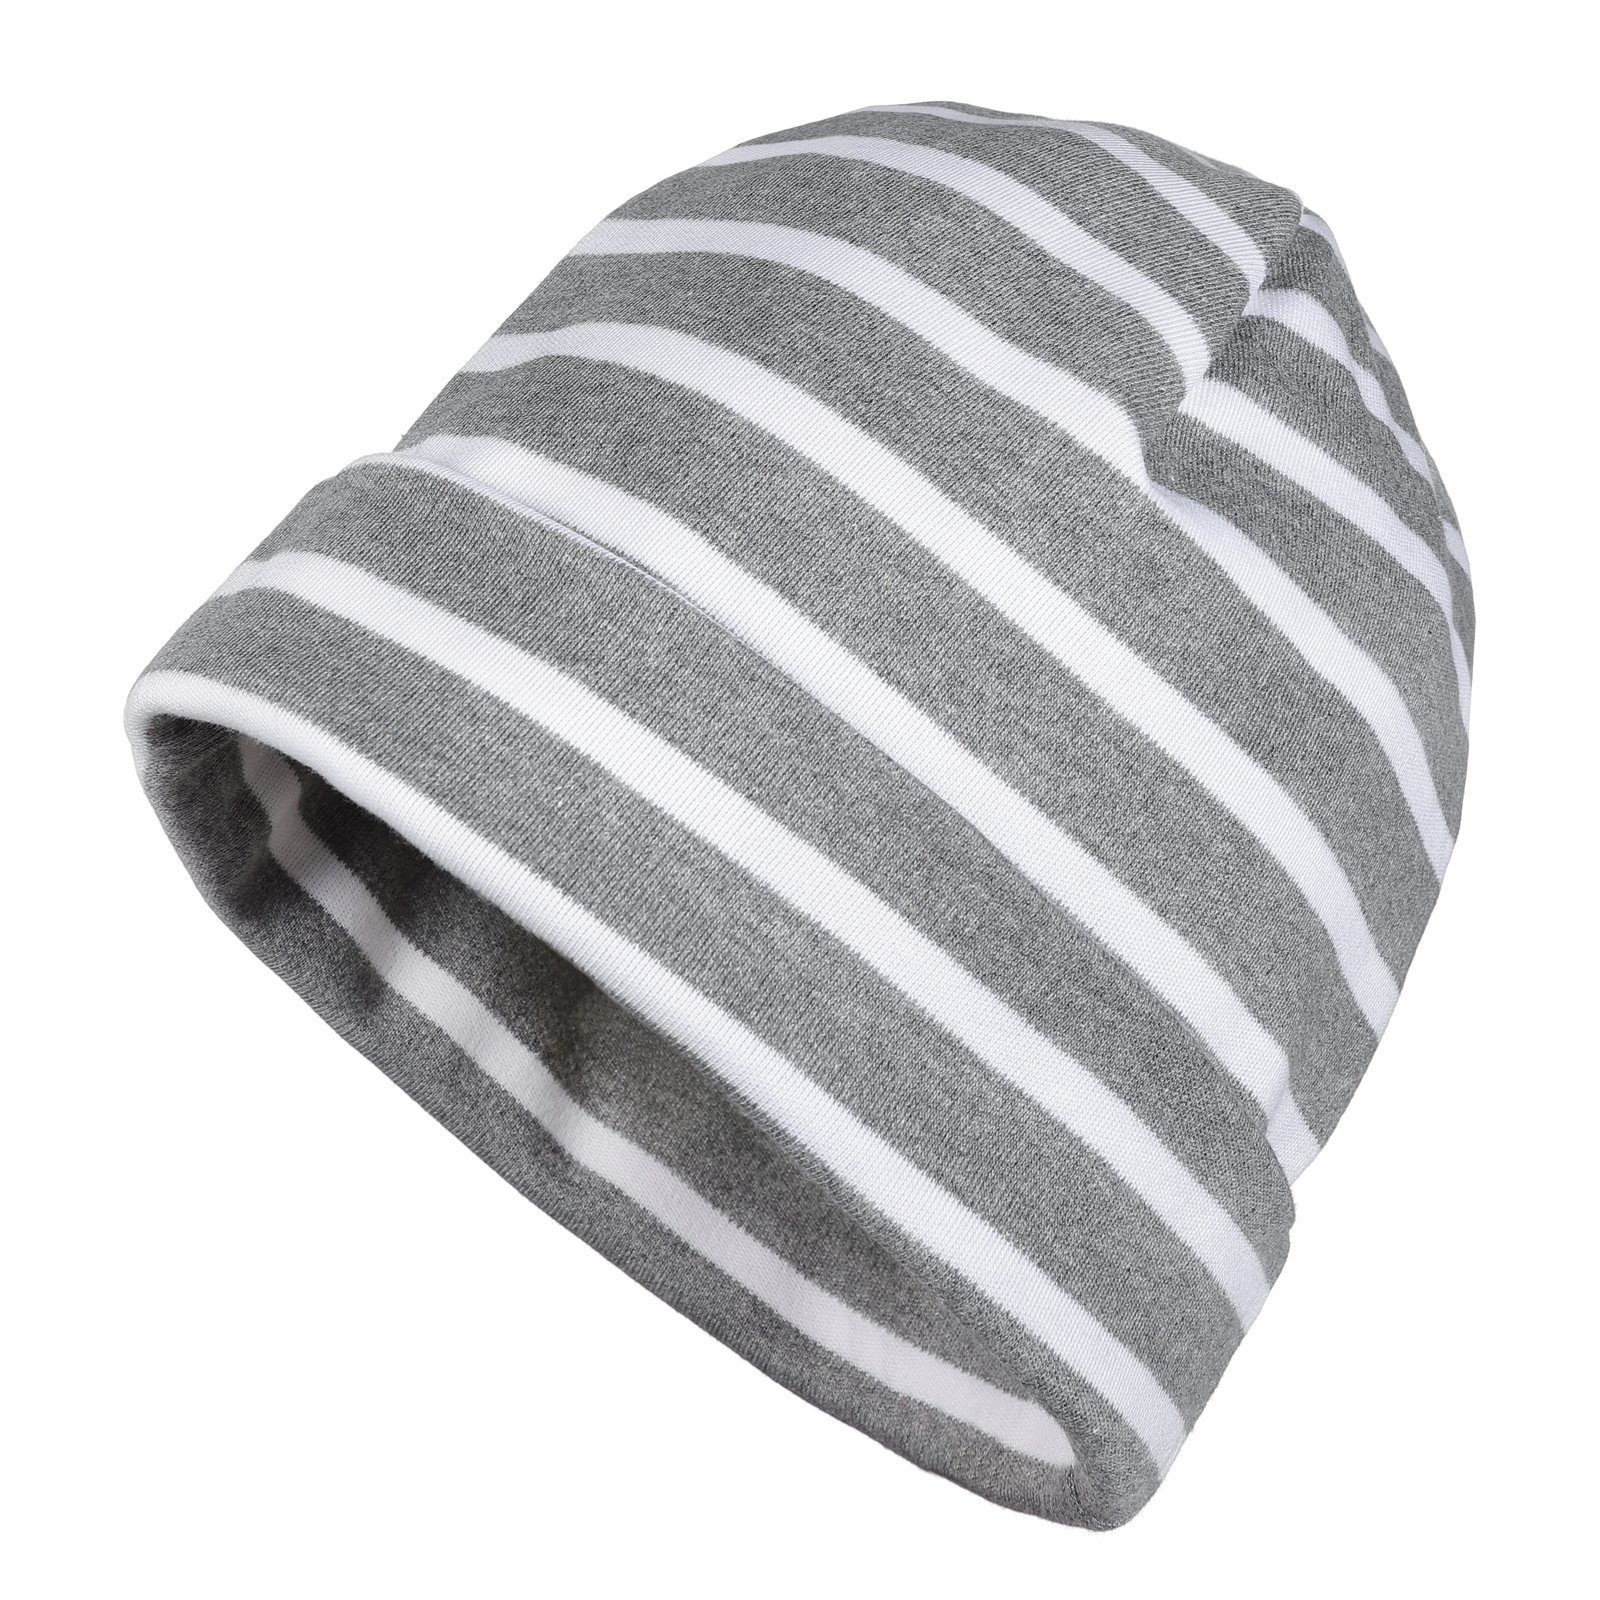 modAS Strickmütze Unisex Mütze Streifen für Kinder & Erwachsene - Ringelmütze Baumwolle (91) grau-melange / weiß